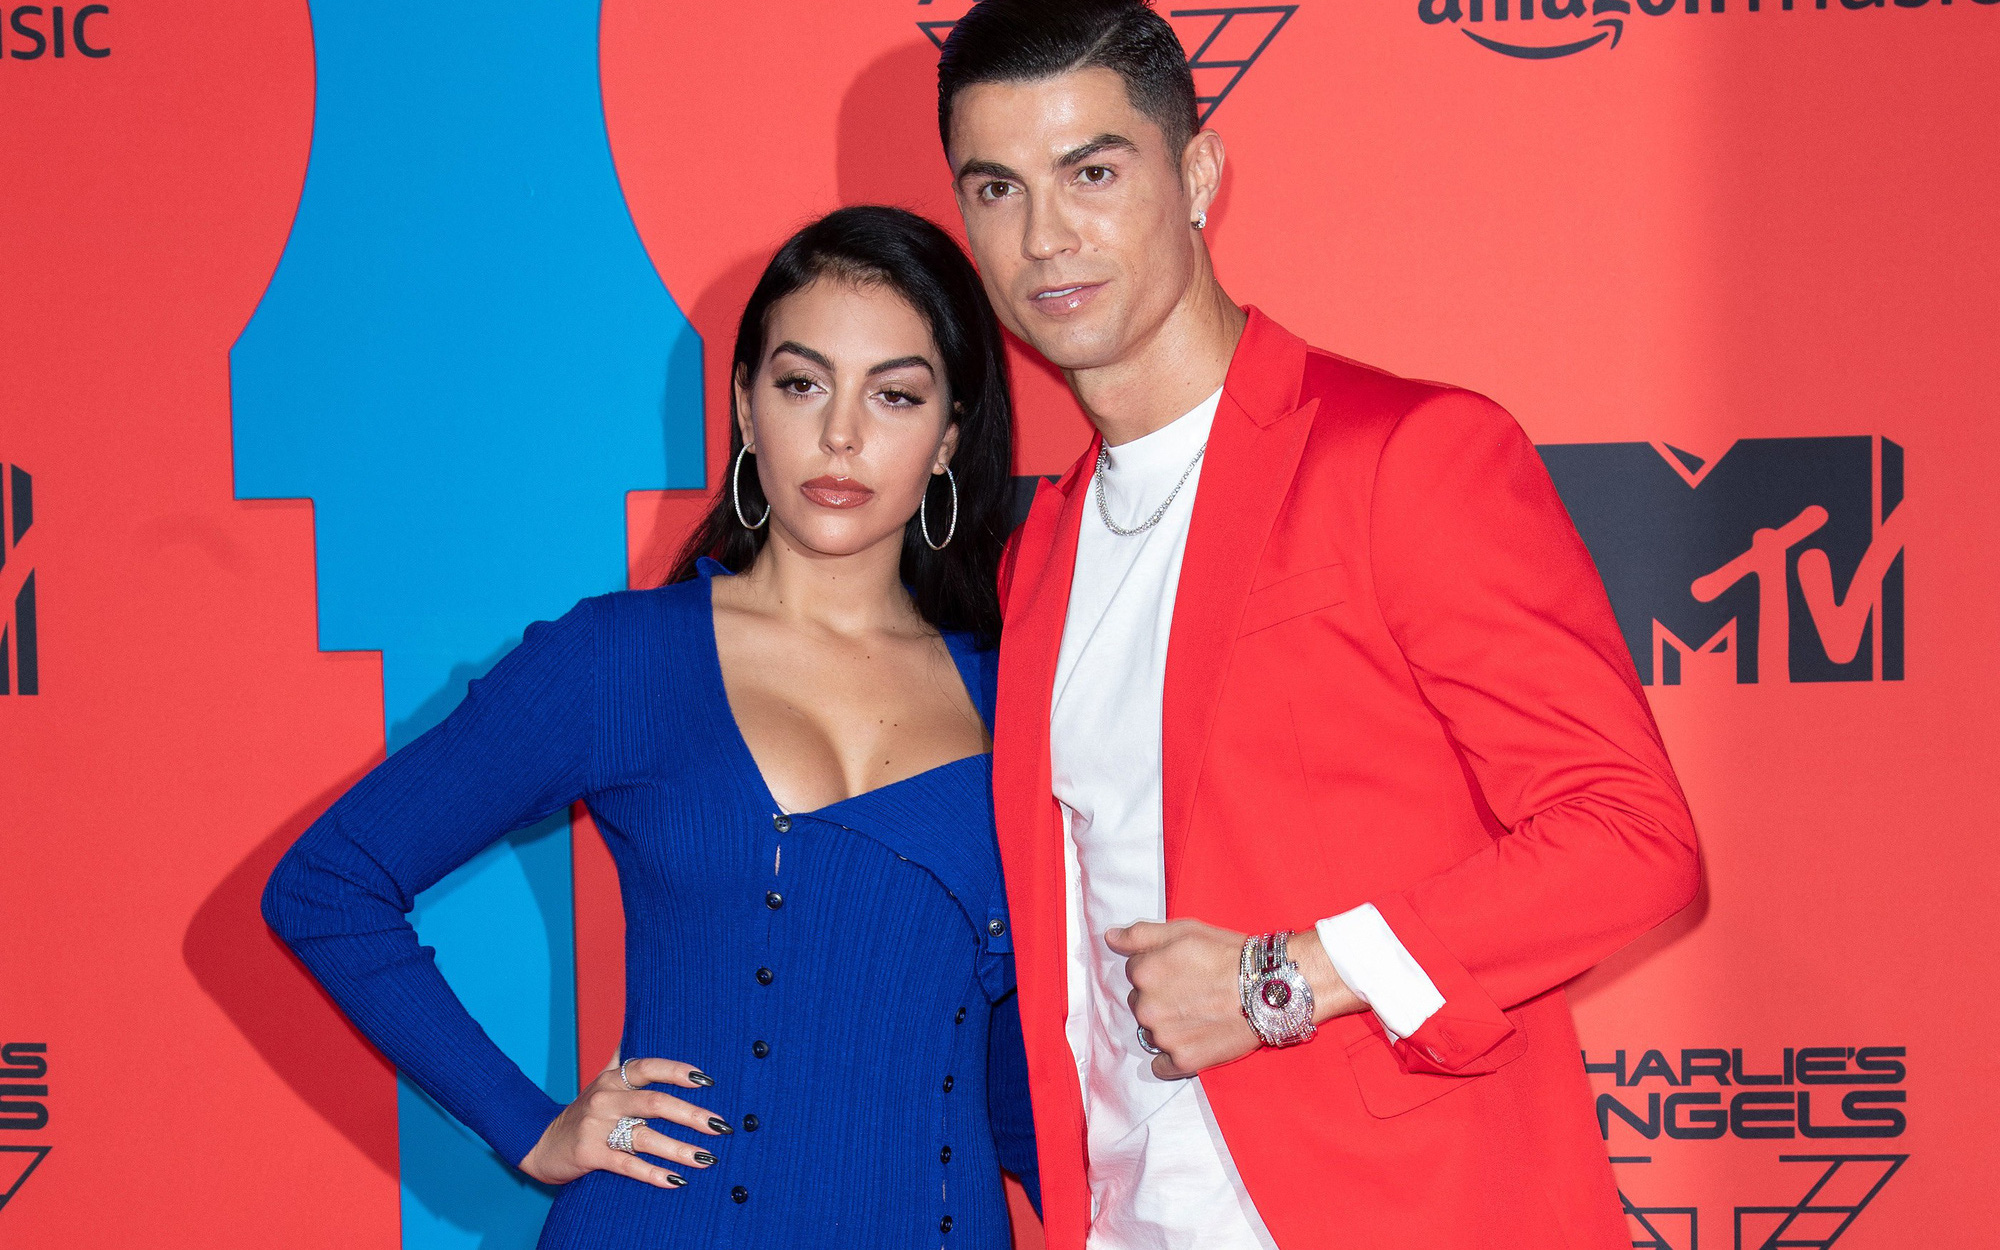 Bạn gái Ronaldo khiến dân tình nháo nhào với bài đăng đầy ẩn ý trên trang cá nhân, truyền thông đồn đoán cô nàng đang mang bầu lần thứ hai